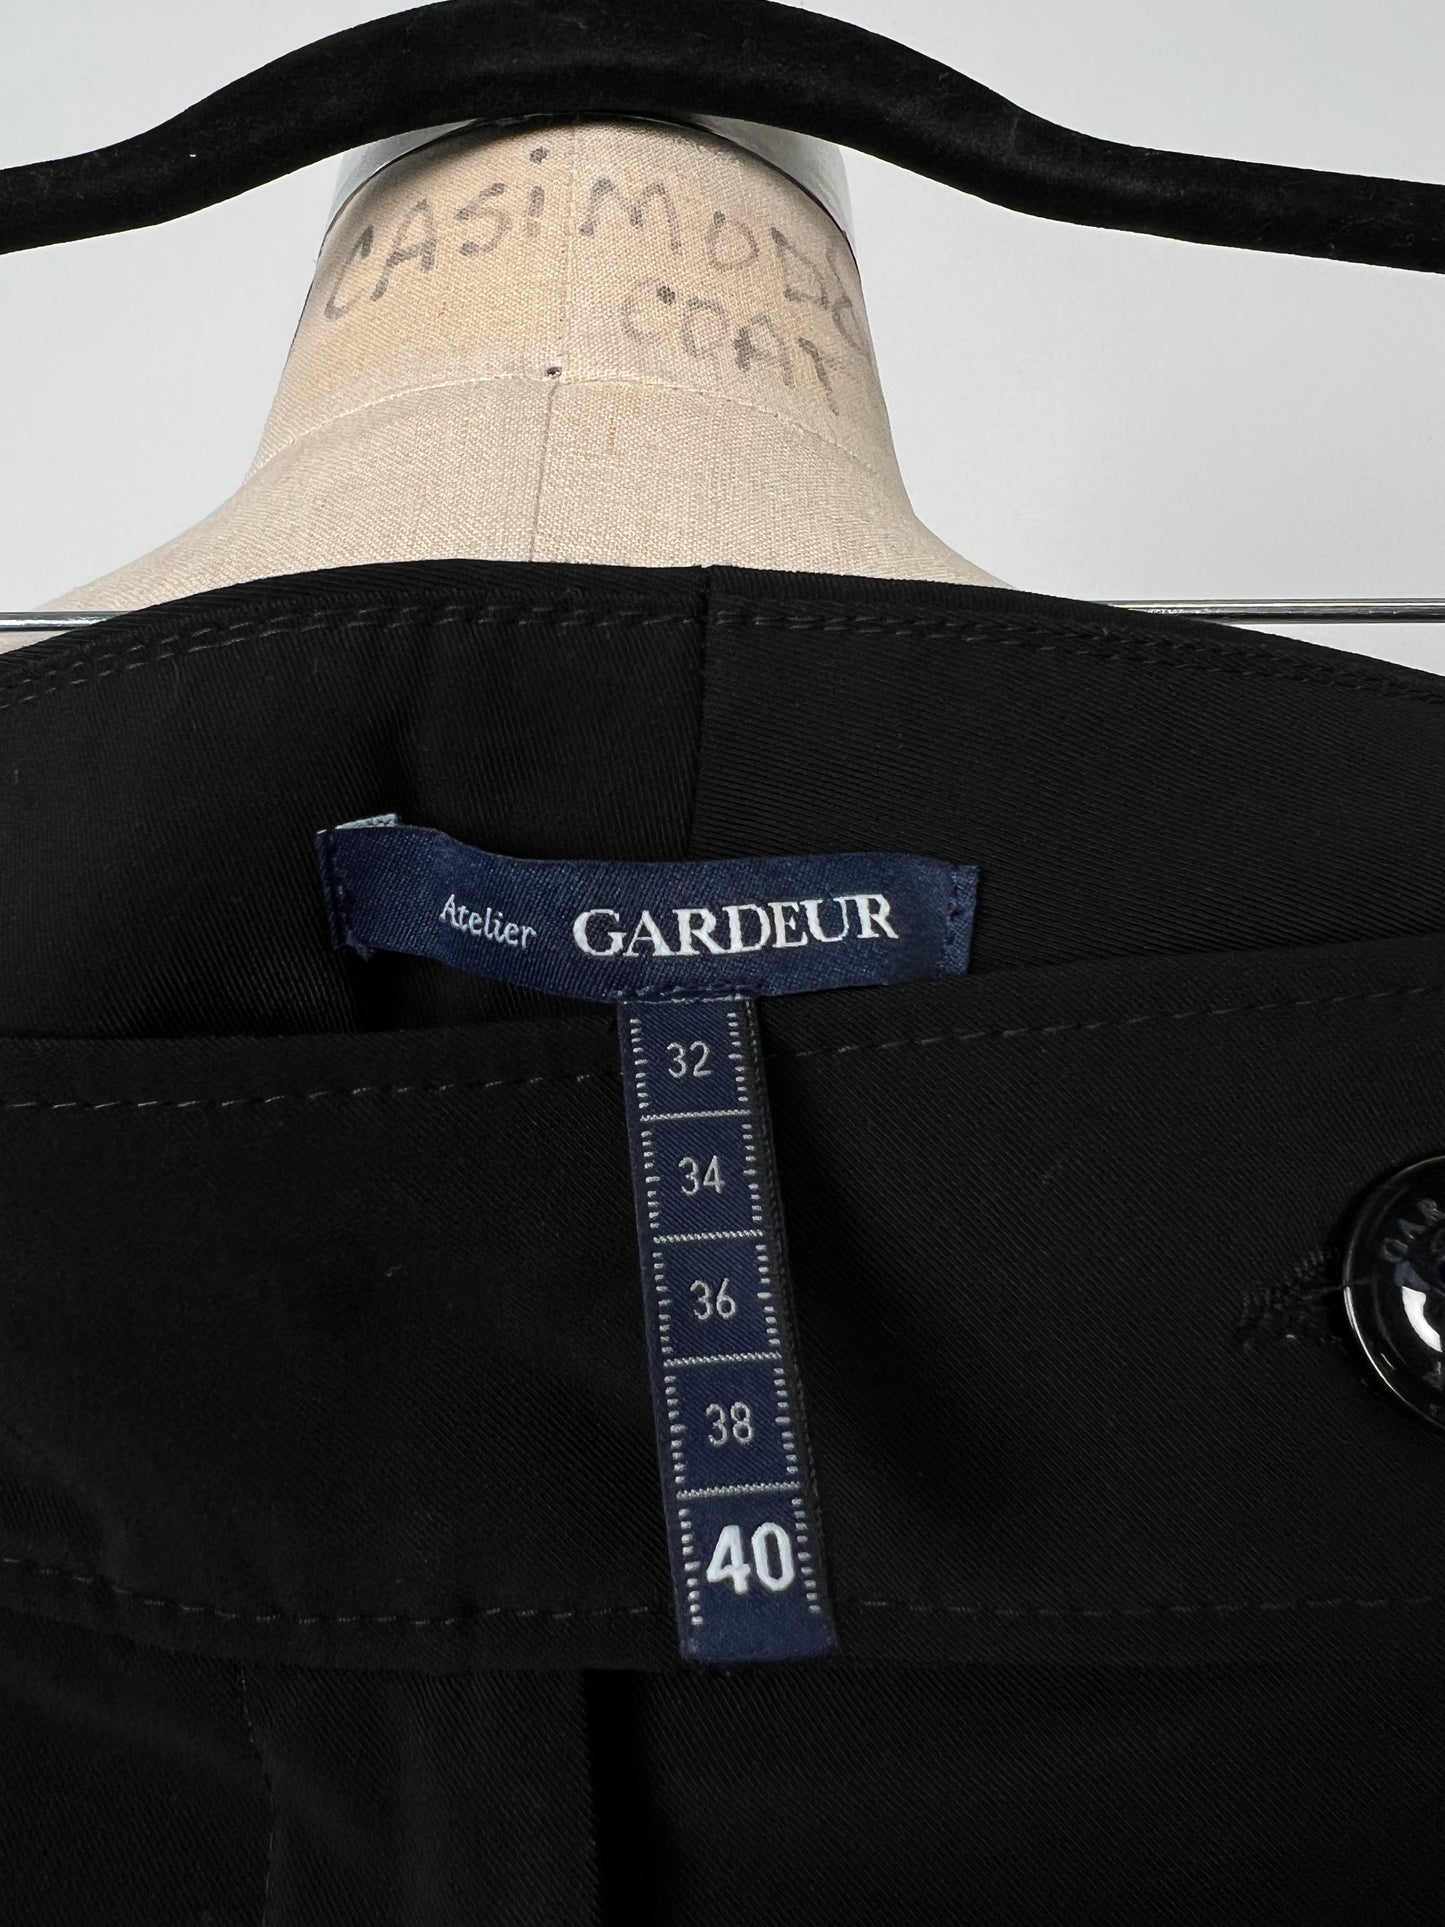 Pantalon tailleur noir droit IMP* (10)